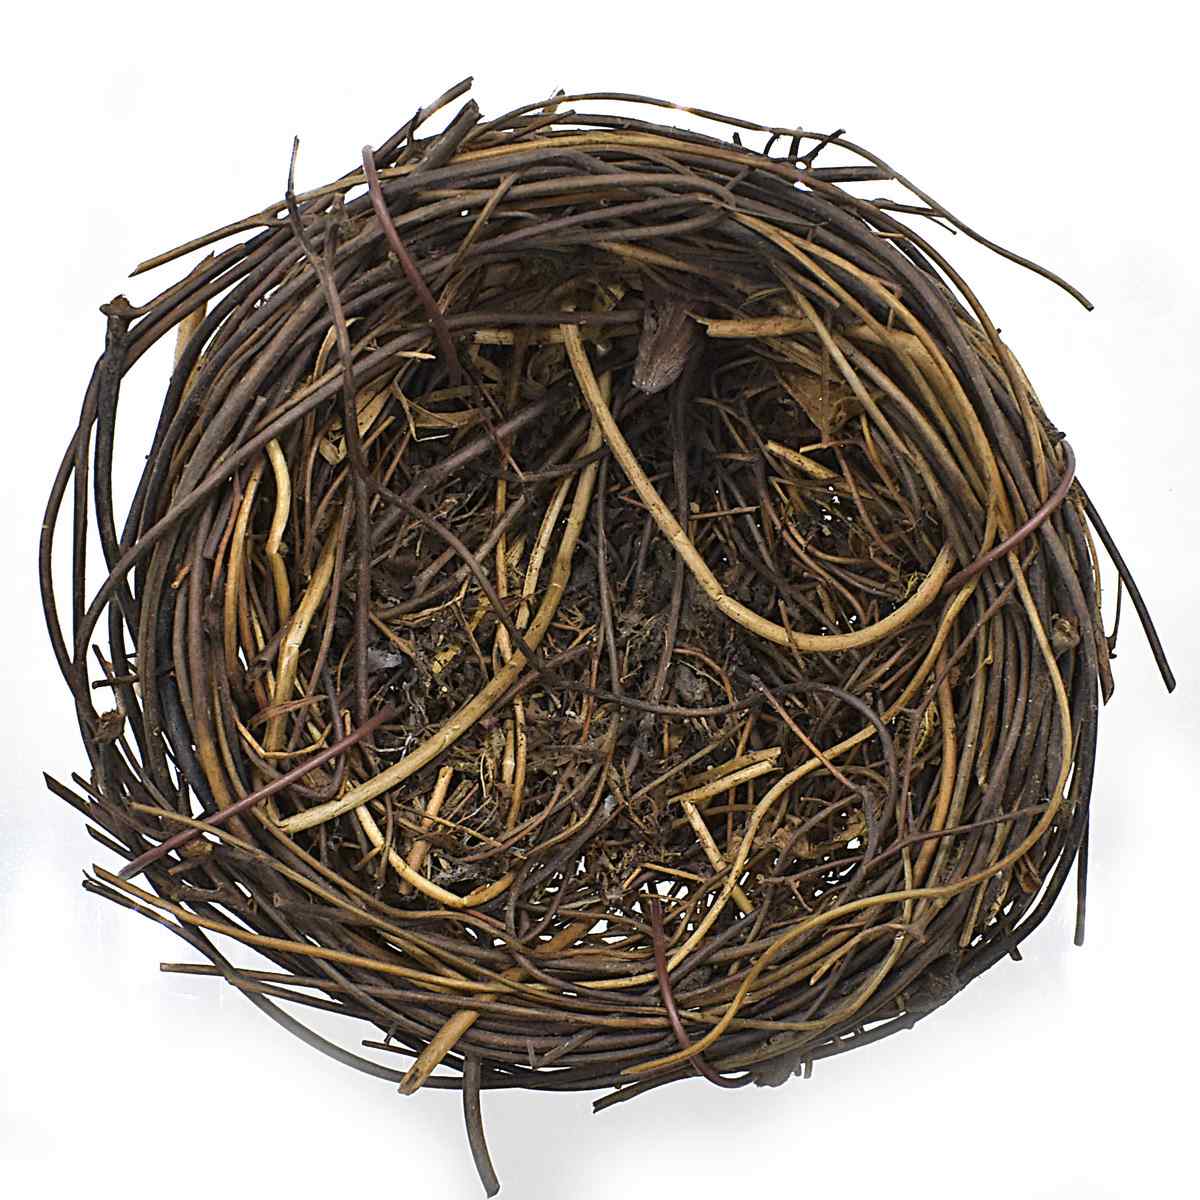 jags-mumbai Artificial Grass Bird Nest